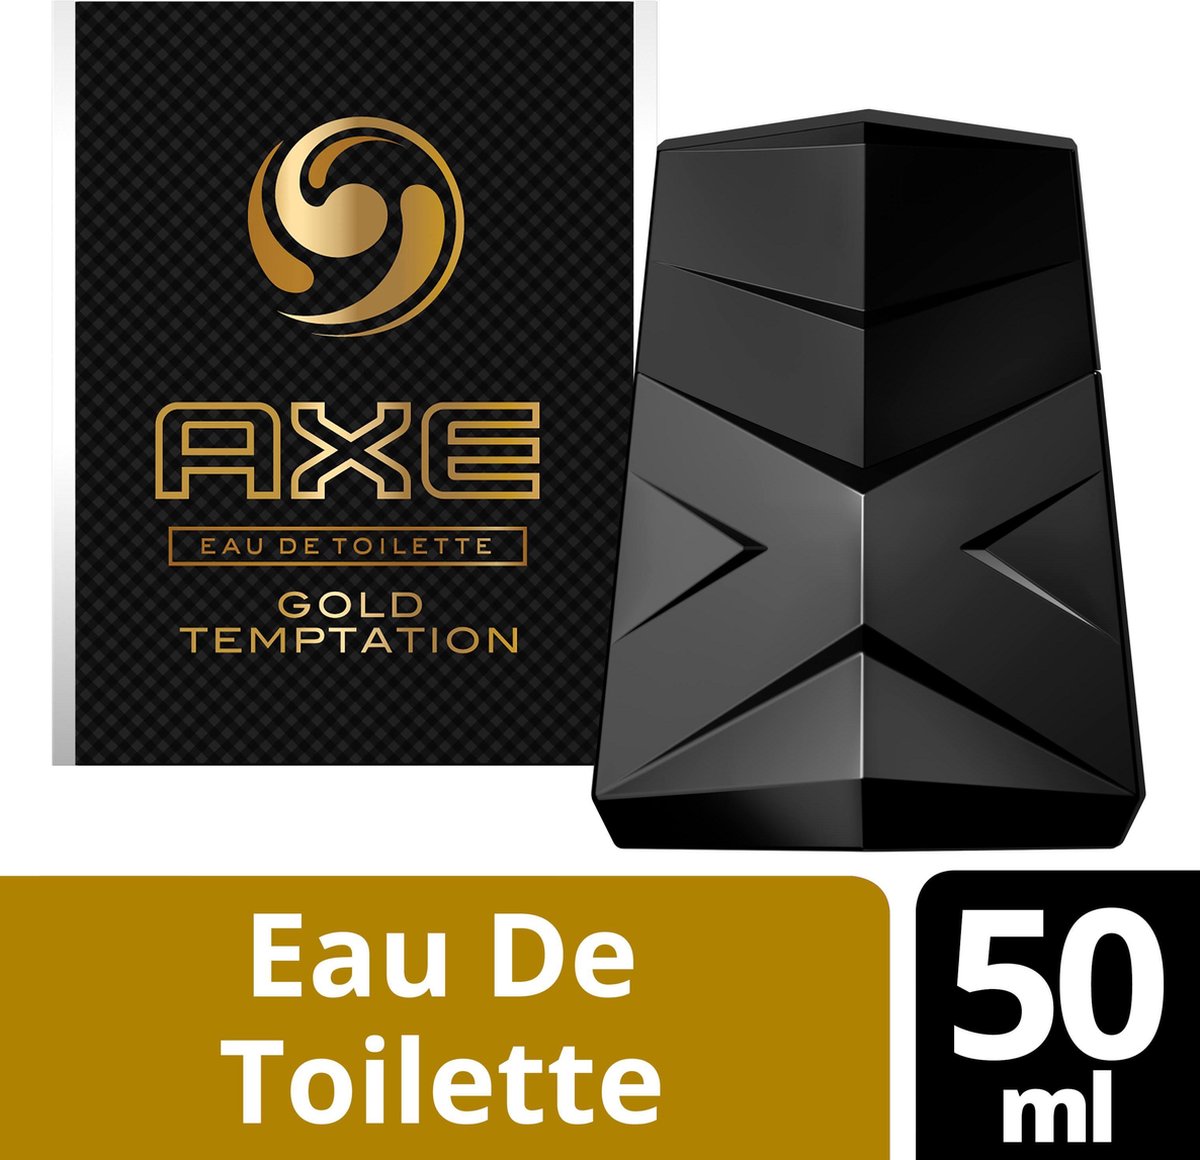 Axe Gold For Men - 50 ml - De Toilette